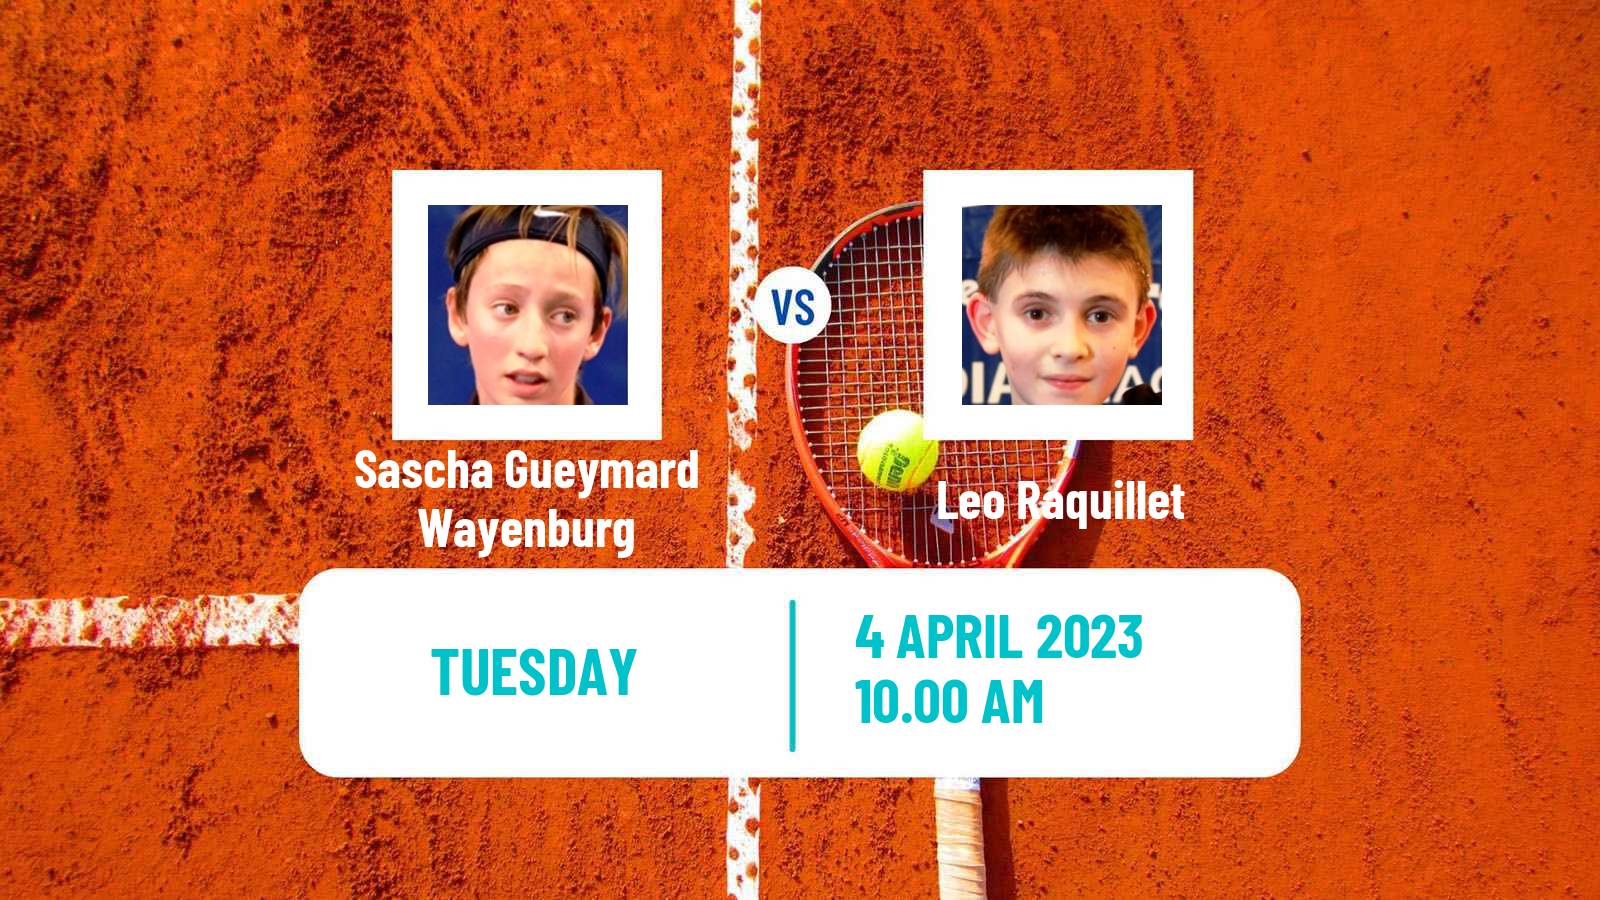 Tennis ITF Tournaments Sascha Gueymard Wayenburg - Leo Raquillet